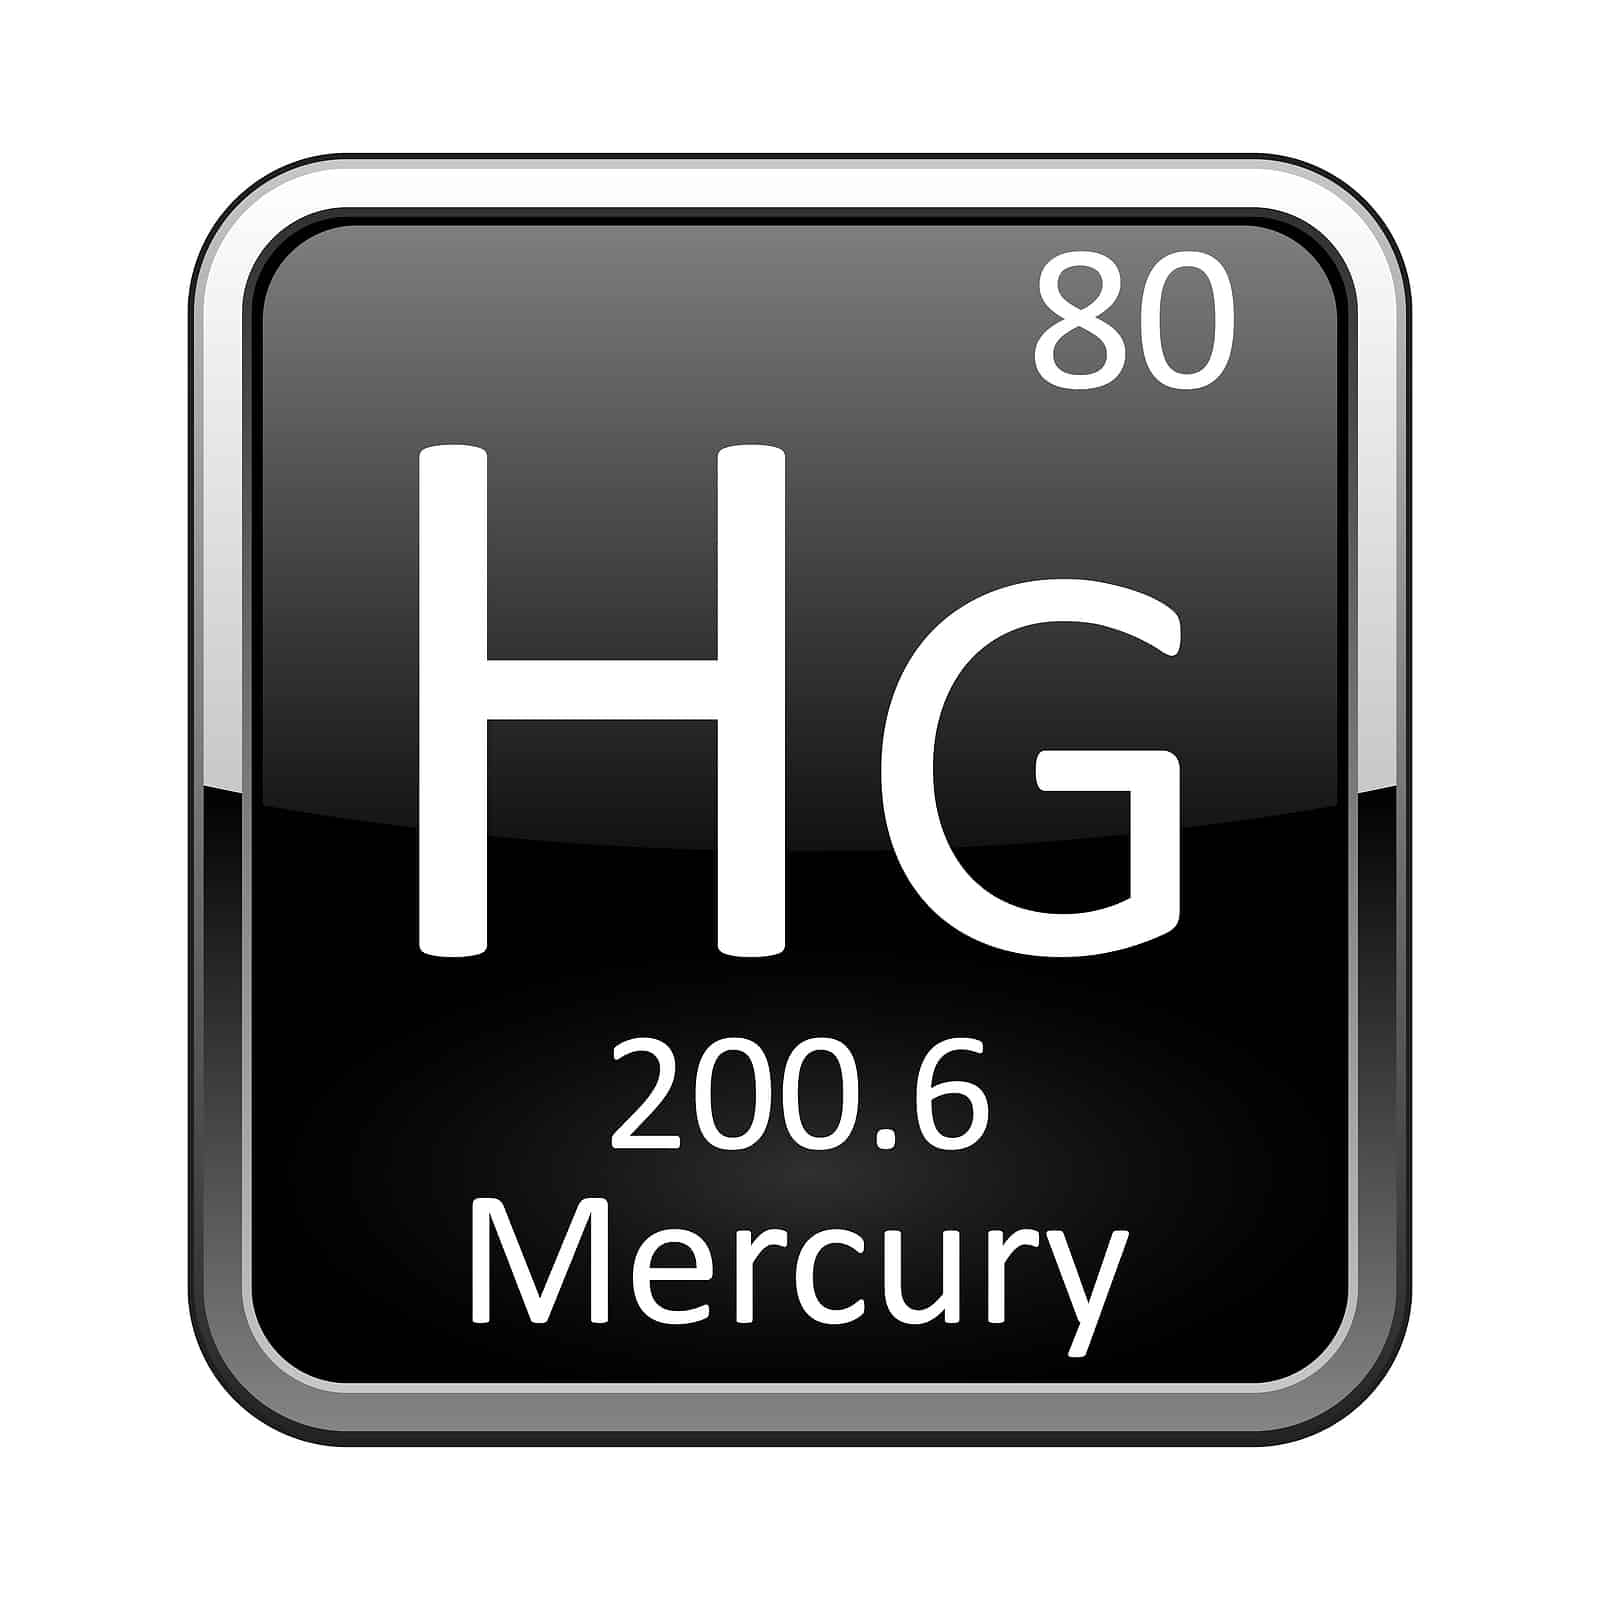 Is ahi tuna high in Mercury